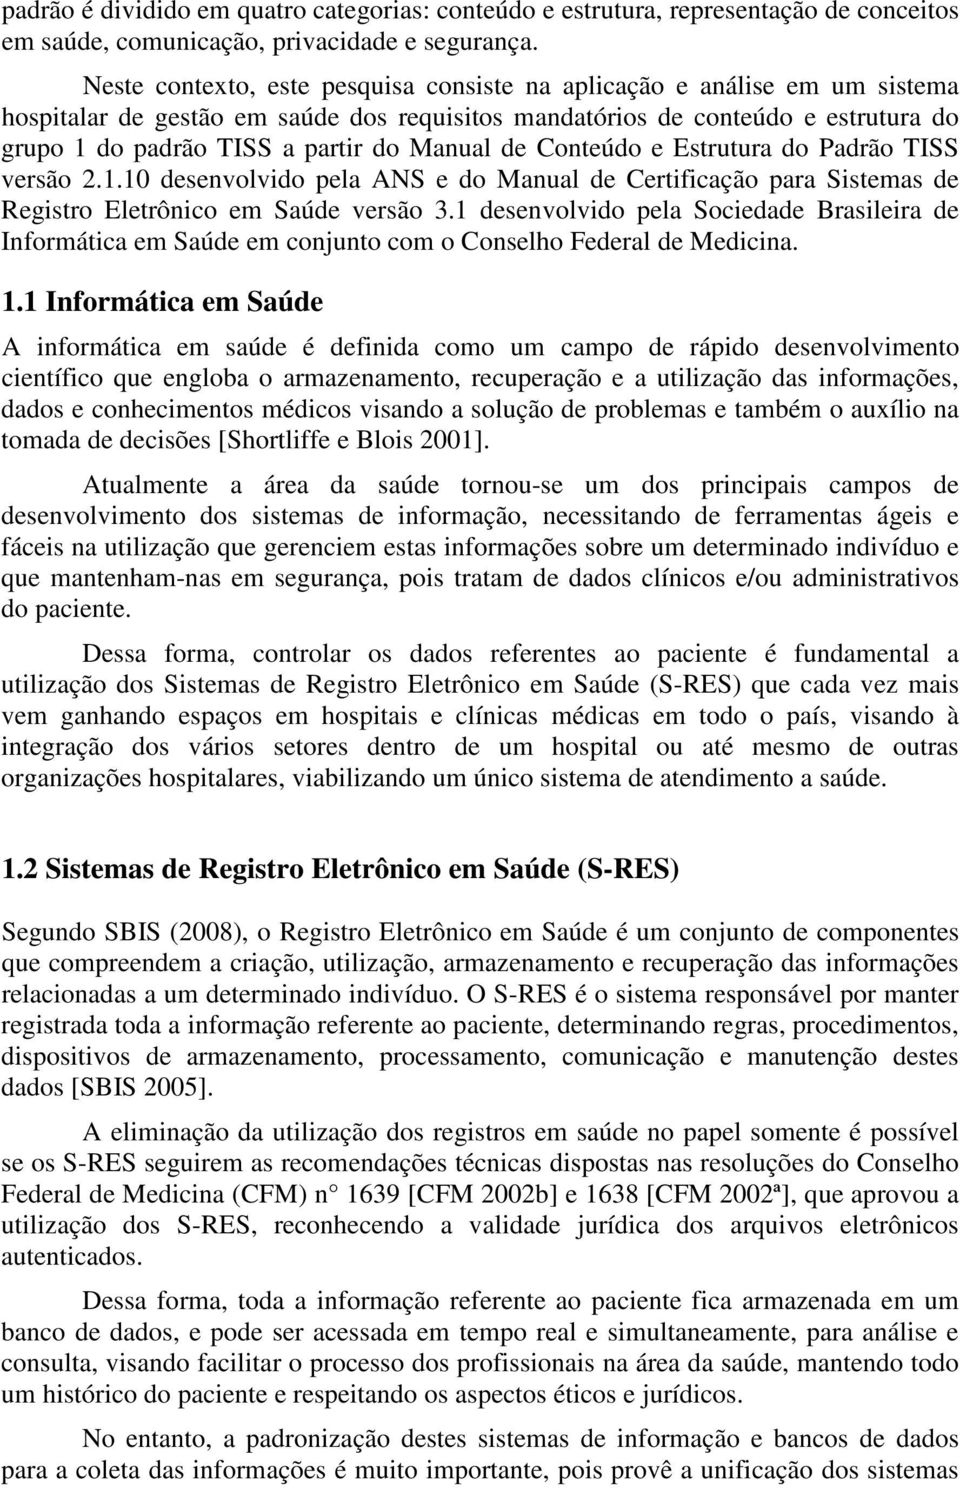 Manual de Conteúdo e Estrutura do Padrão TISS versão 2.1.10 desenvolvido pela ANS e do Manual de Certificação para Sistemas de Registro Eletrônico em Saúde versão 3.